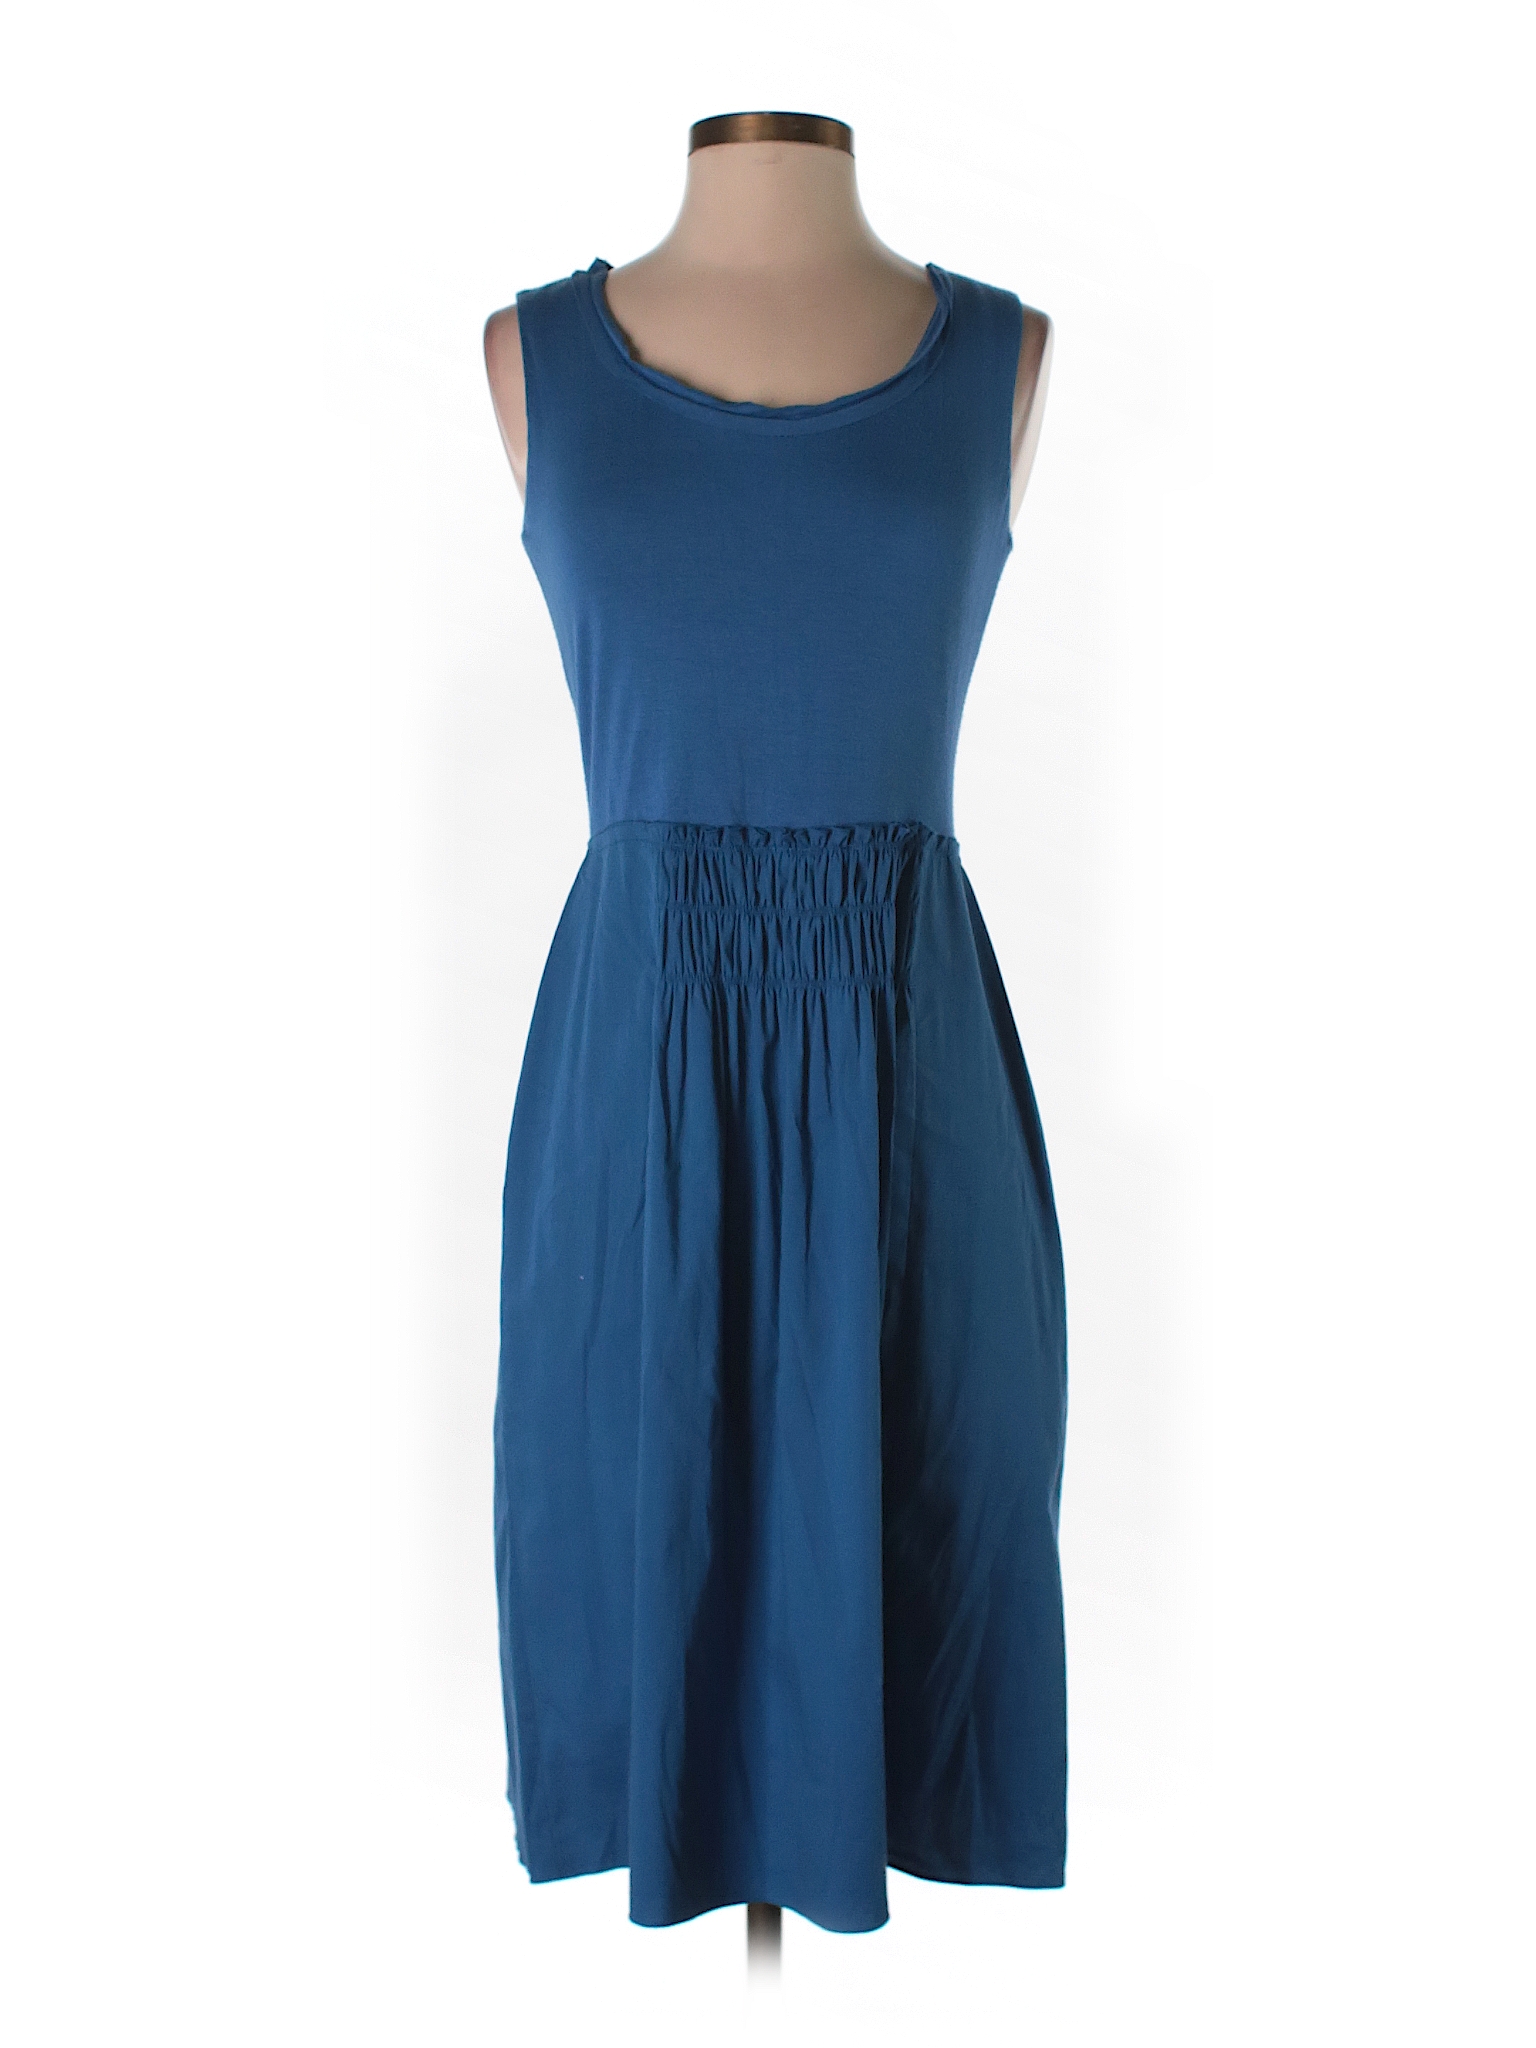 Tahari Solid Dark Blue Casual Dress Size 4 - 76% off | thredUP